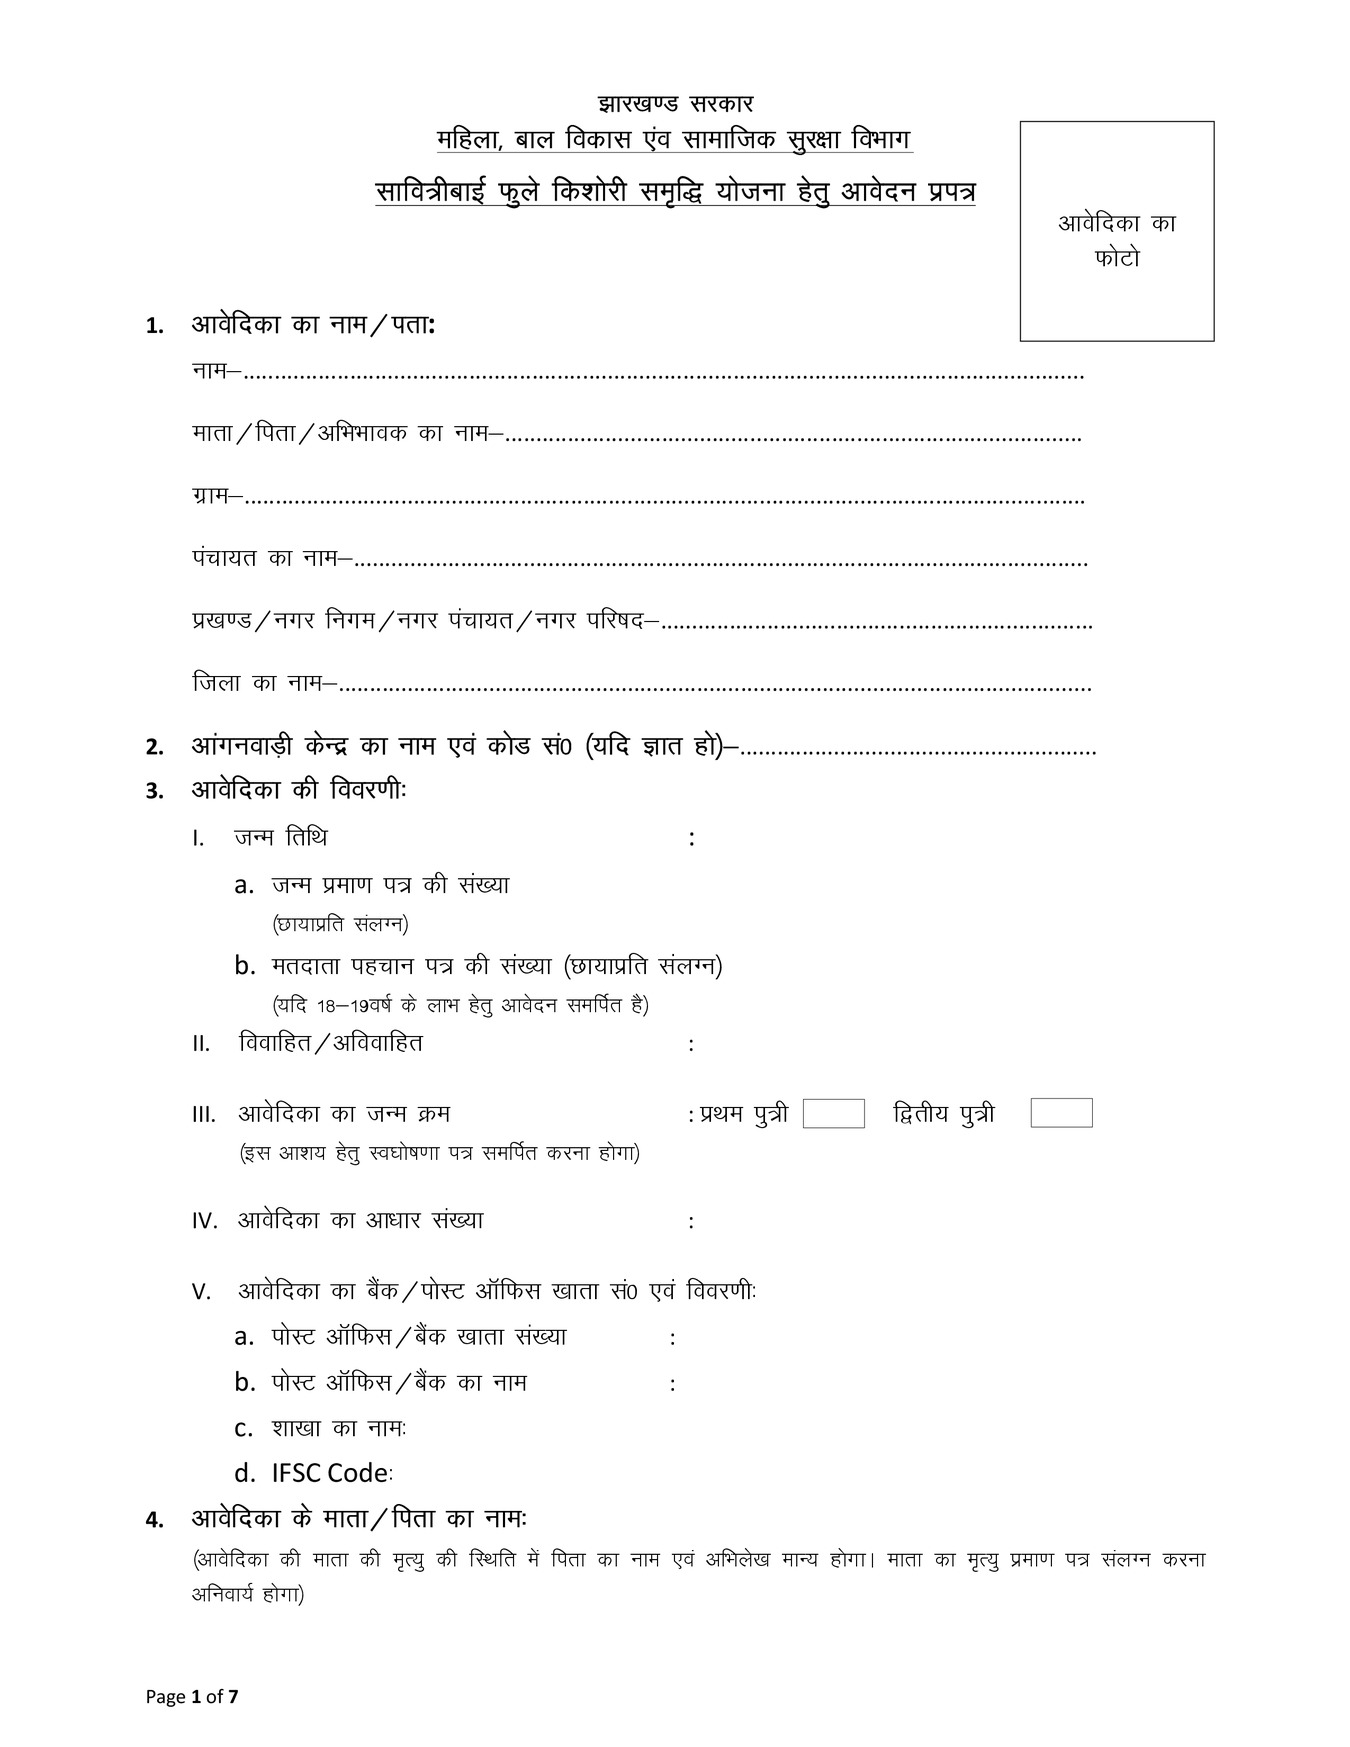 Savitri Bai Phule Kishori Samridhi Yojana 2022 Form PDF